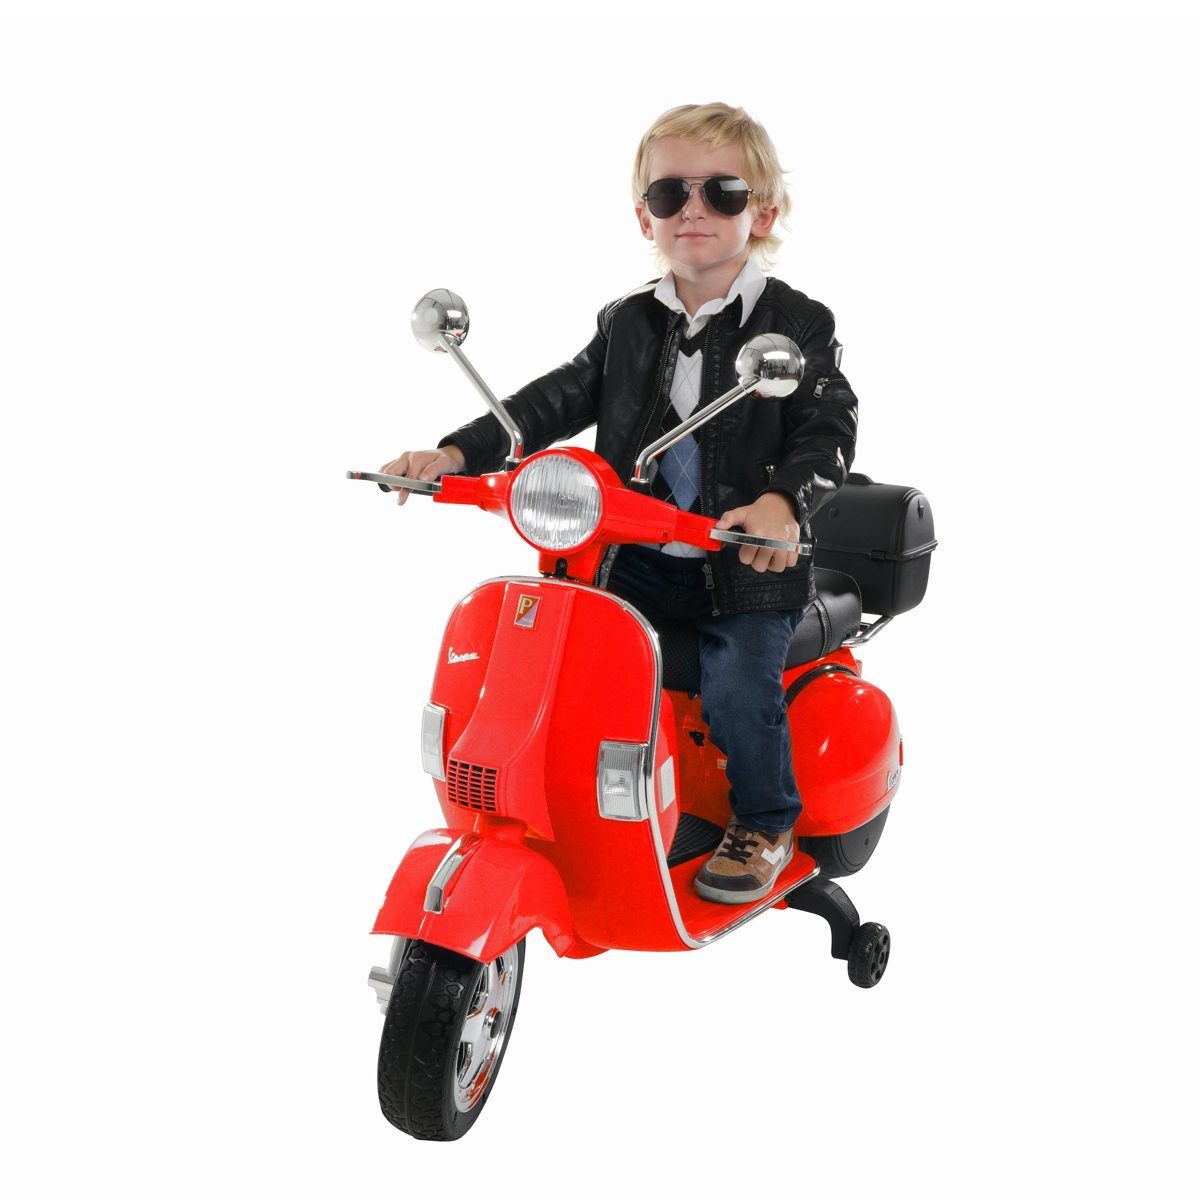 Kinder Motorrad Sicherheitsgurt - Diese Modelle empfehlen wir